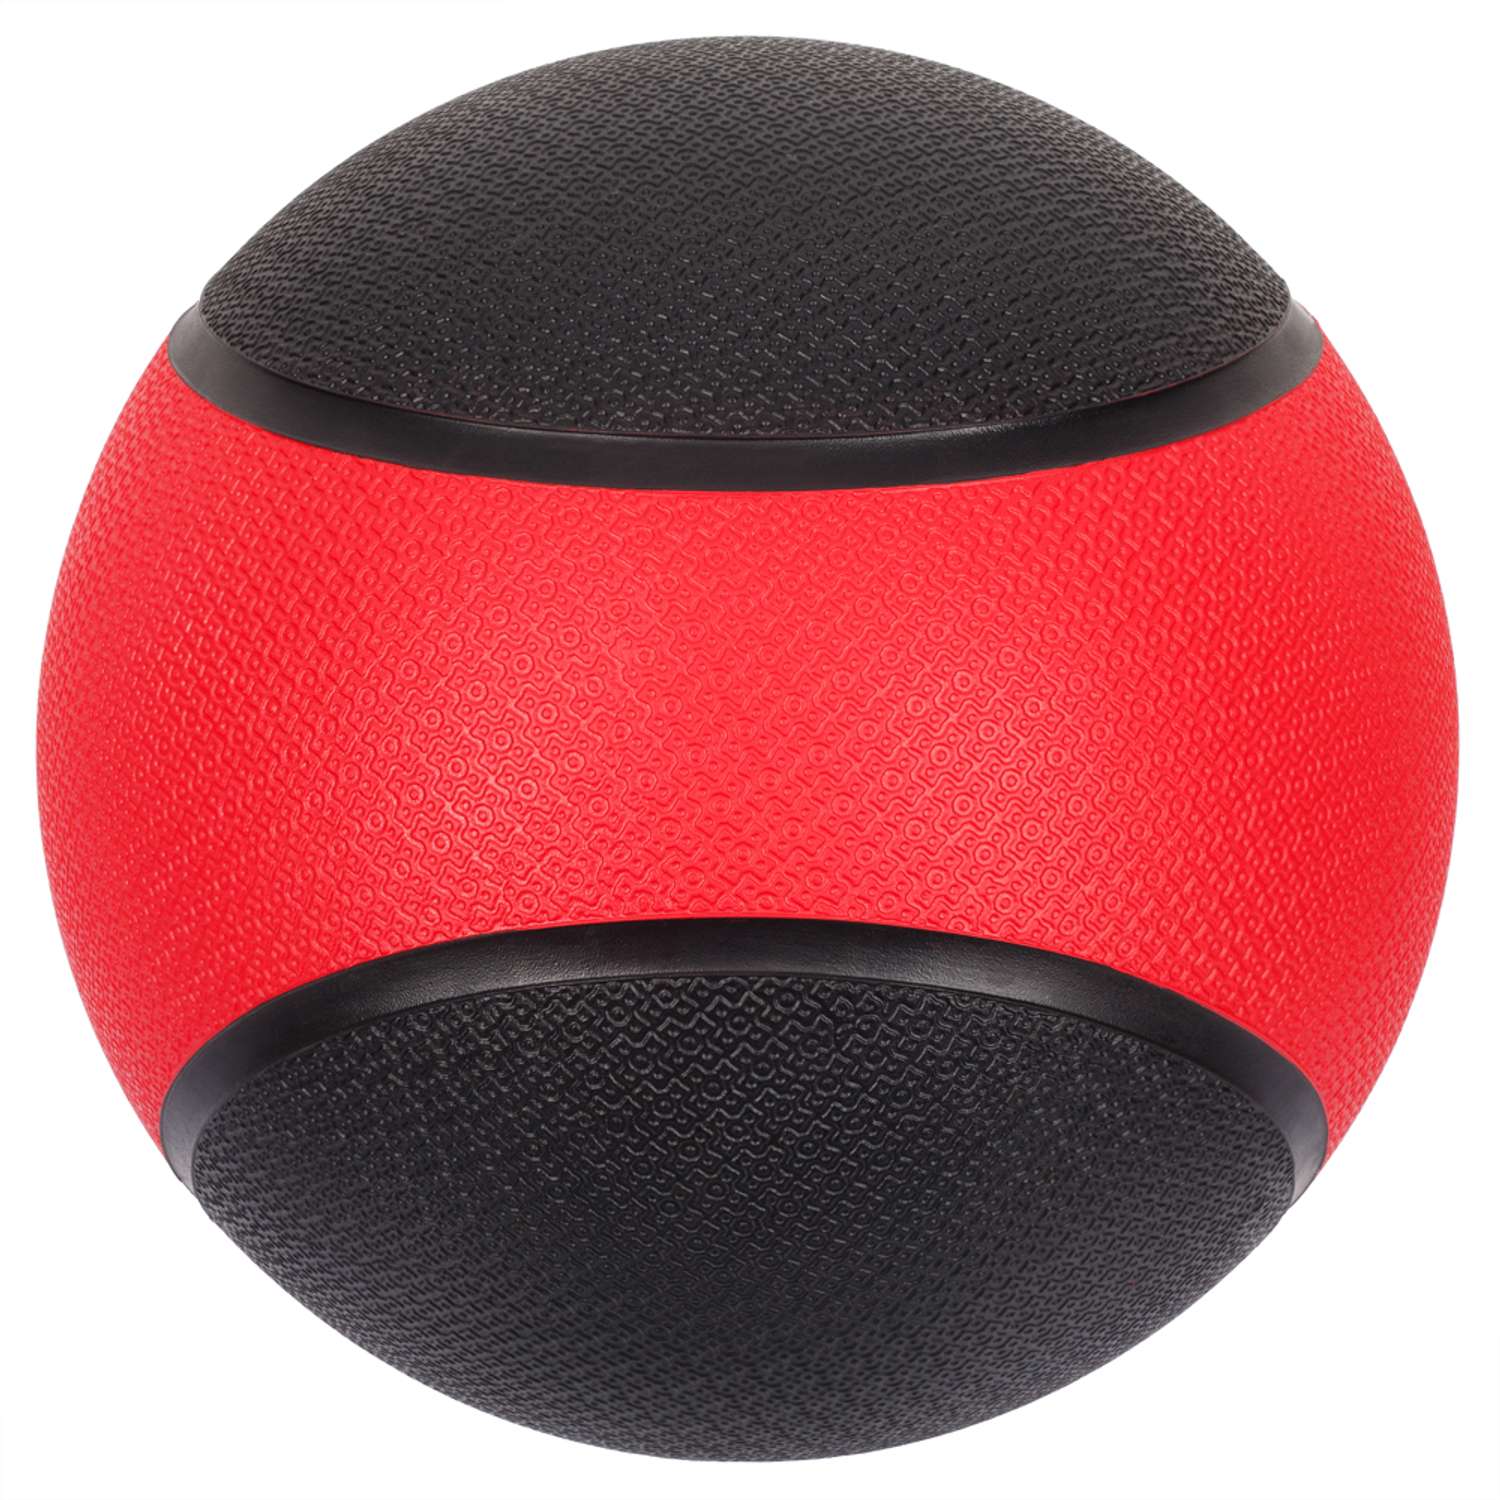 Медбол STRONG BODY медицинский мяч для фитнеса черно-красный 2 кг - фото 4